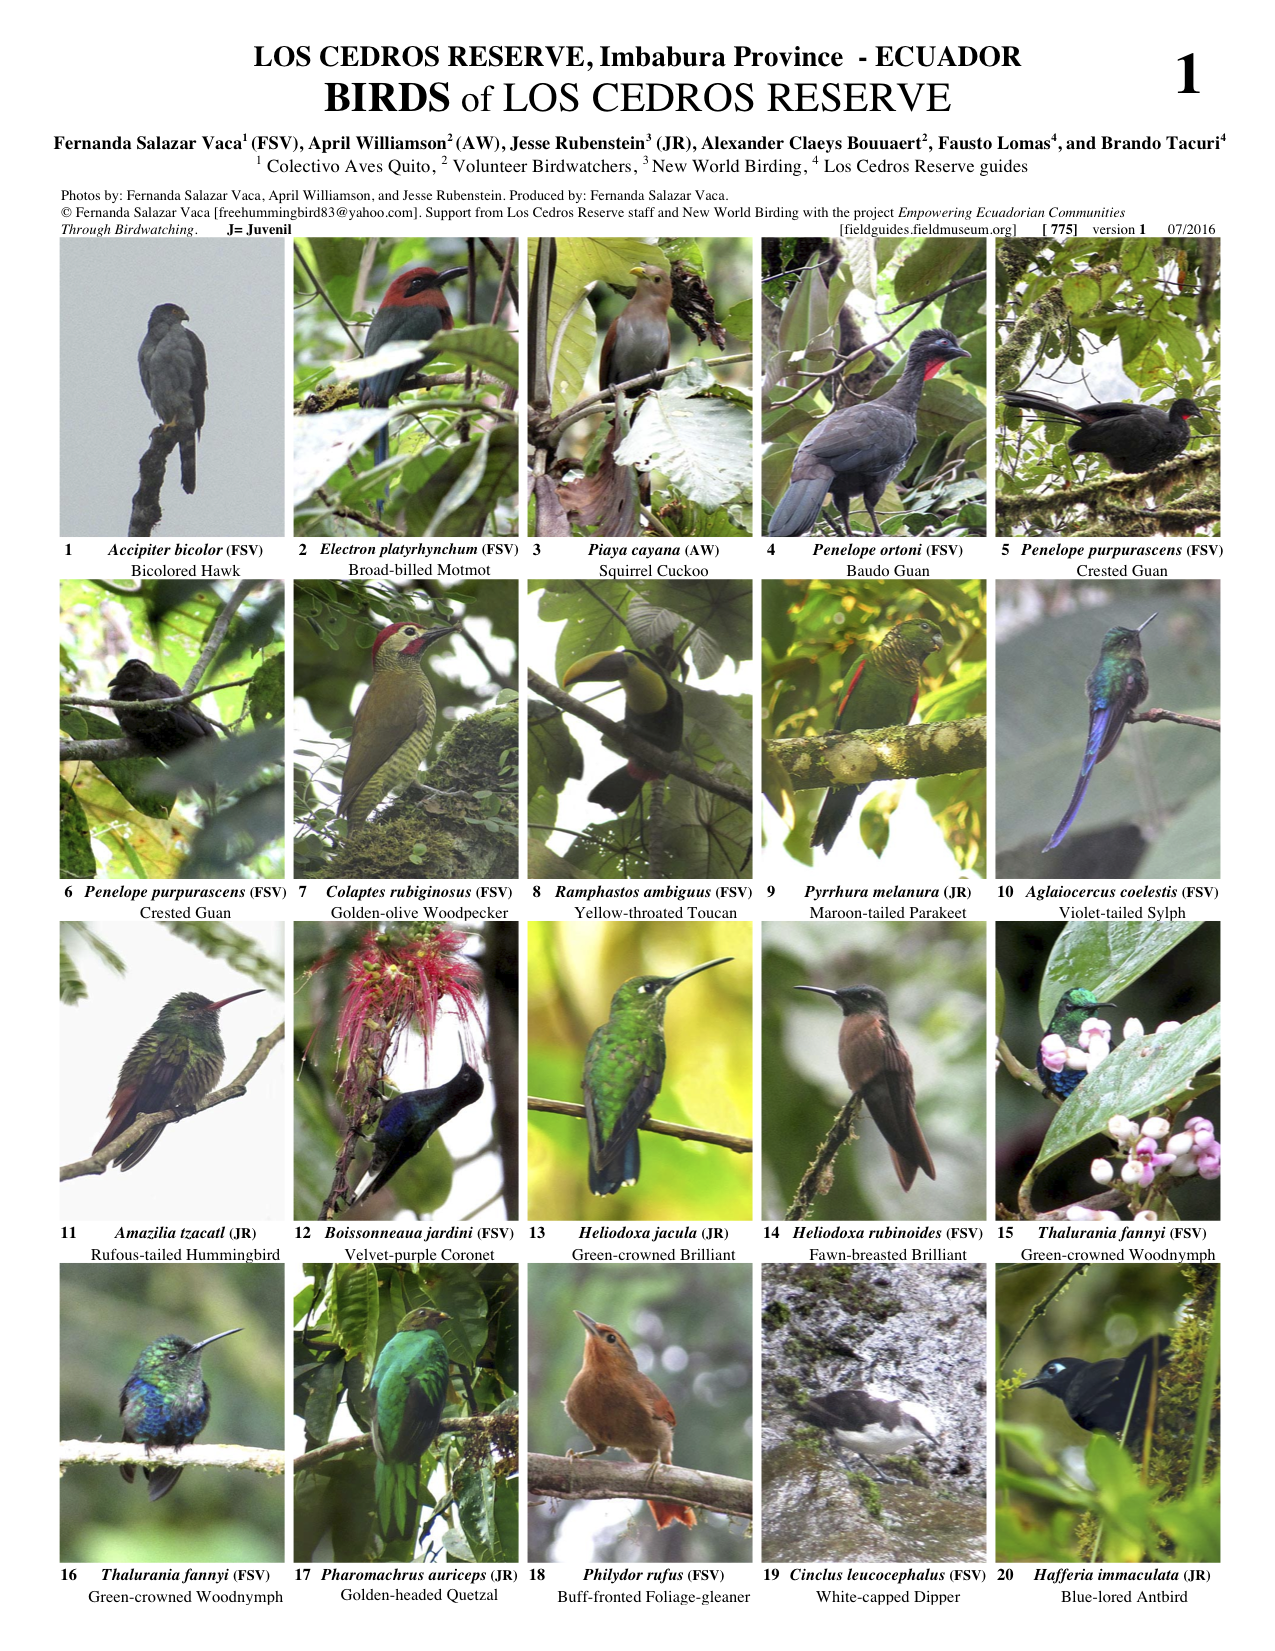 775_ecuador_birds_of_los_cedros_reserve.pdf 